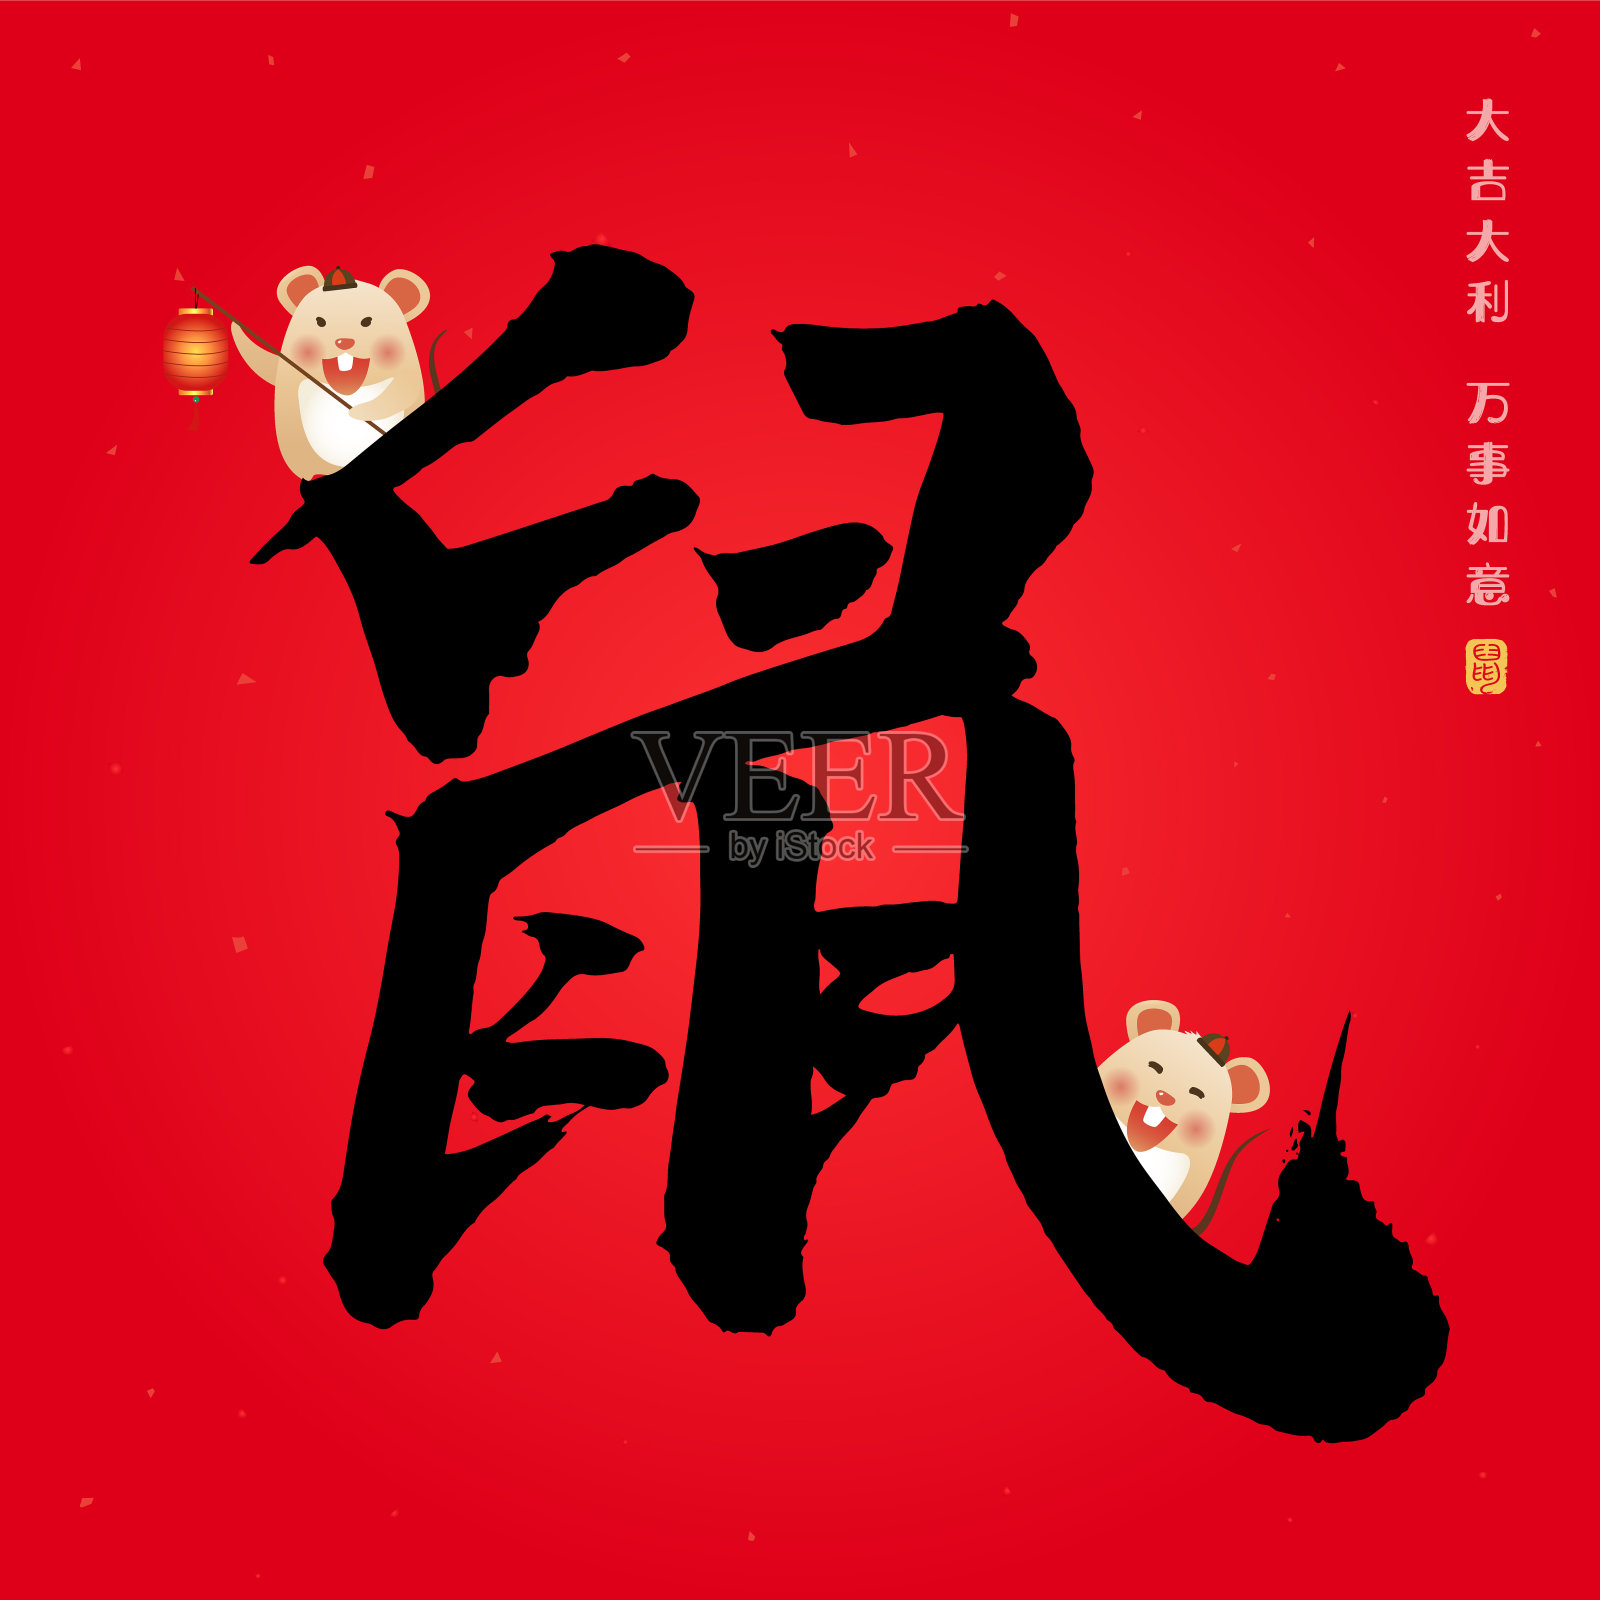 中国书法和可爱的卡通鼠标。中文大字含义:鼠标。祝你好运，有一个伟大的新年。插画图片素材